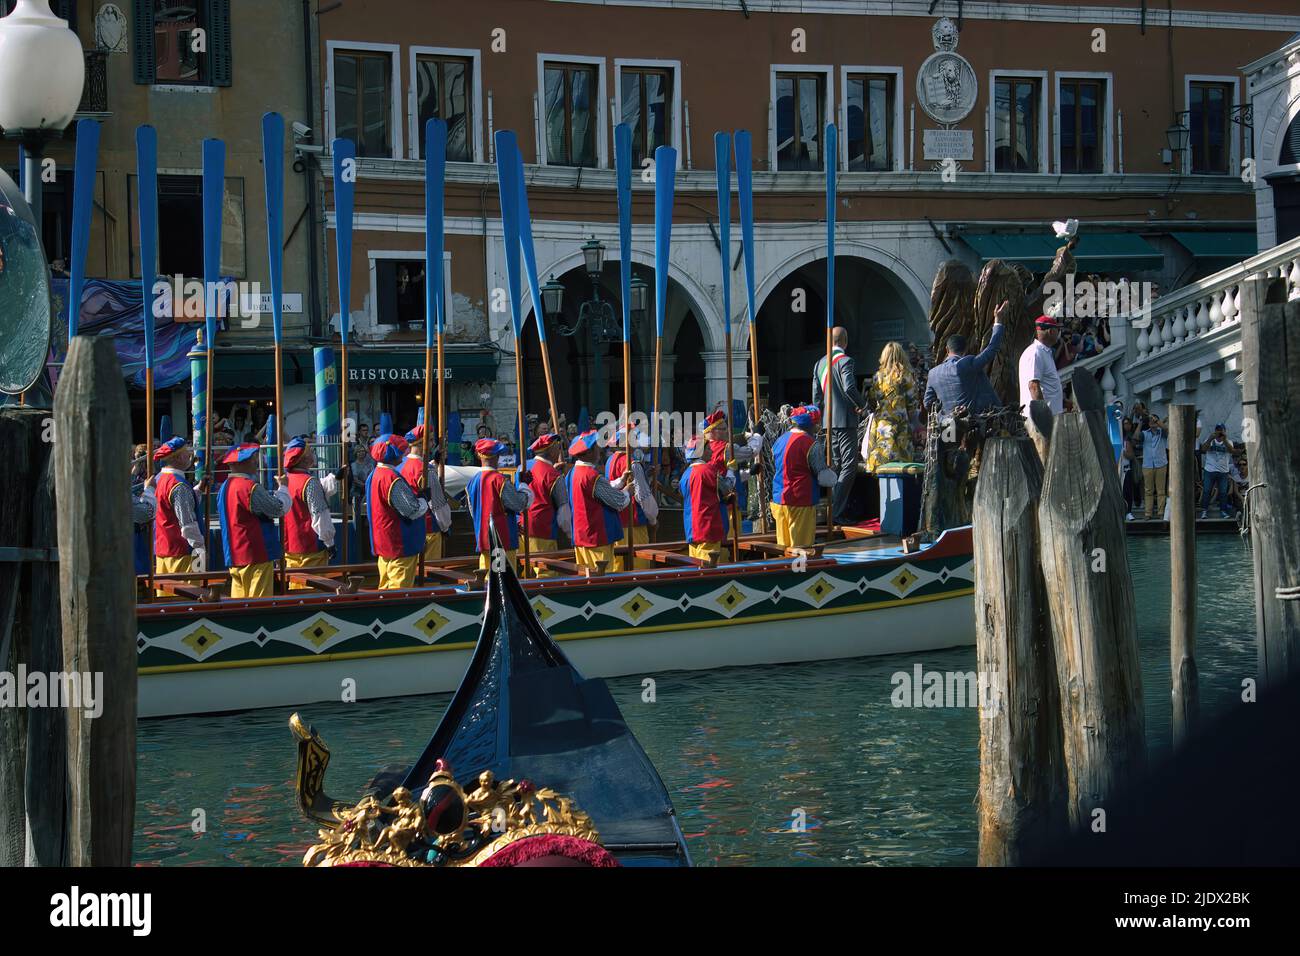 Venise, Italie - 02 septembre 2018: Bateaux vénitiens traditionnels ou régate de sandolo mascarreta naviguant ensemble dans le même costume dans le grand canal pendant Banque D'Images